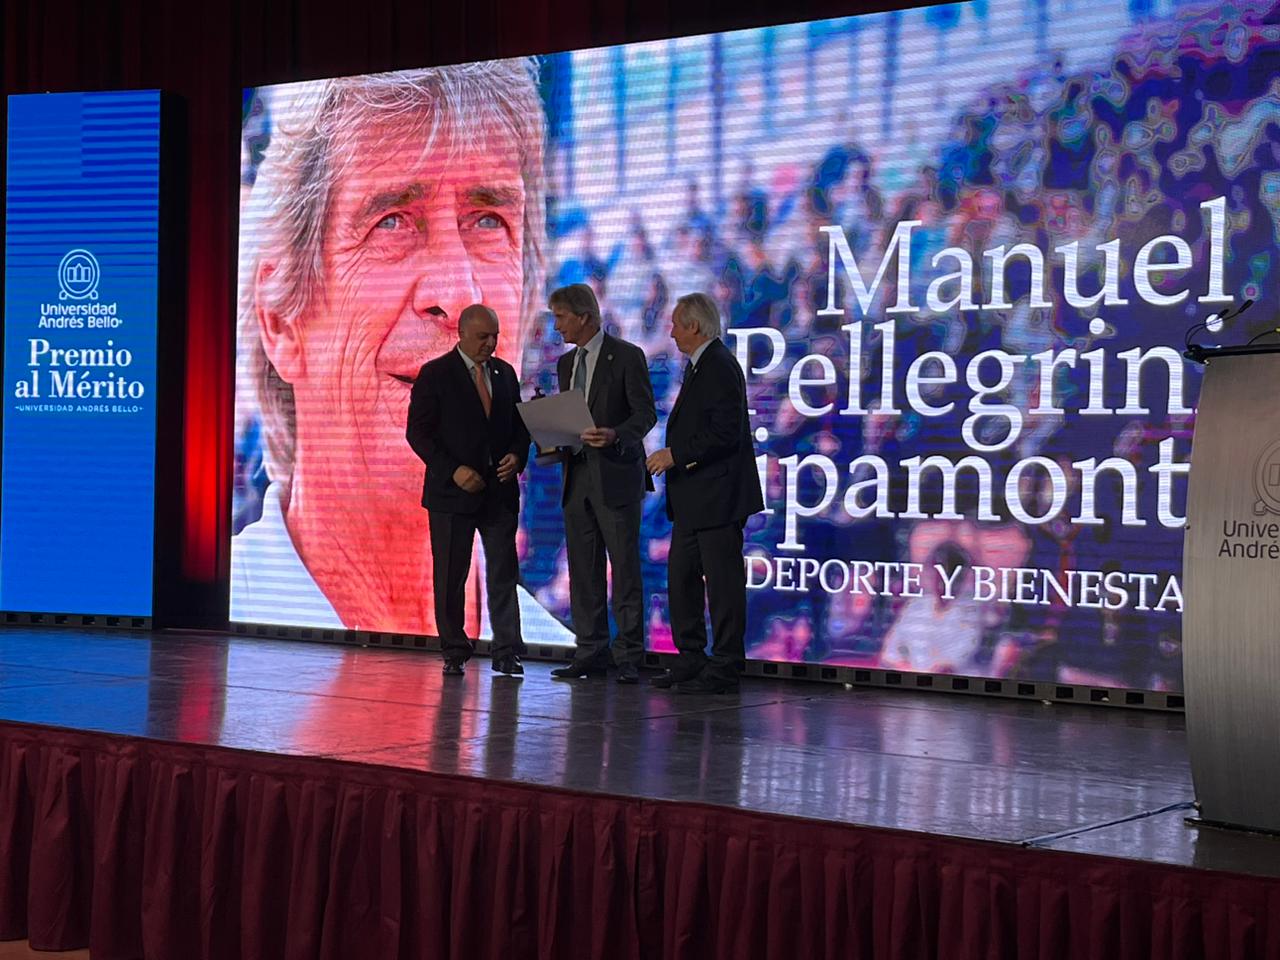 Manuel Pellegrini